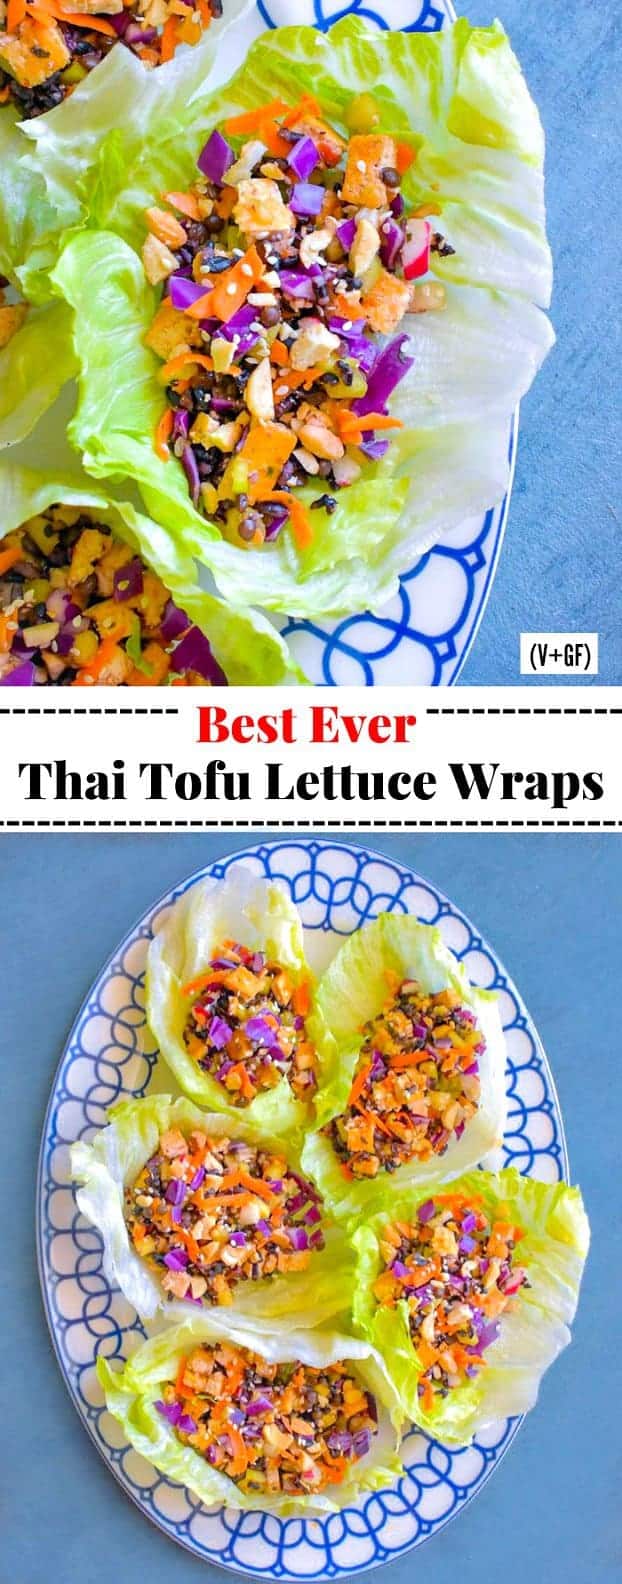 Thai Tofu Lettuce Wraps using tofu, lentils, grains and nuts.